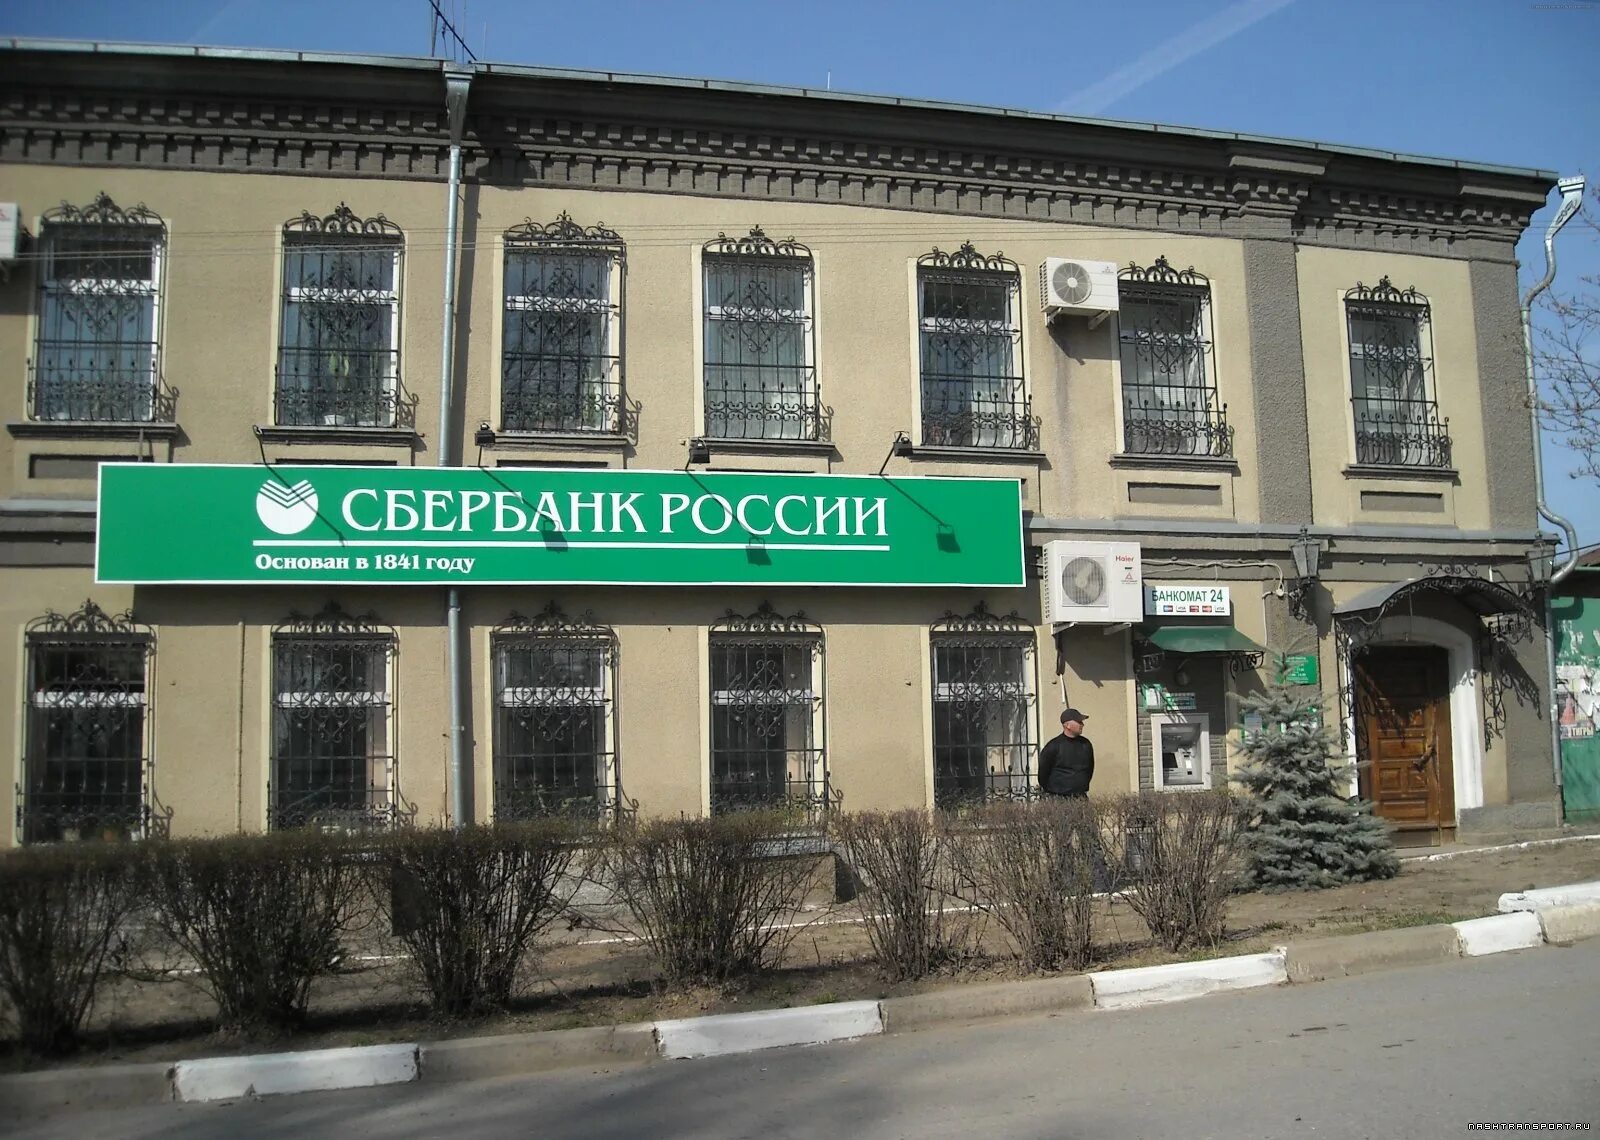 Первый Сбербанк в России 1841. Сбербанк России основан в 1841 году. Сбербанк 1841 год. Первая сберкасса в России.